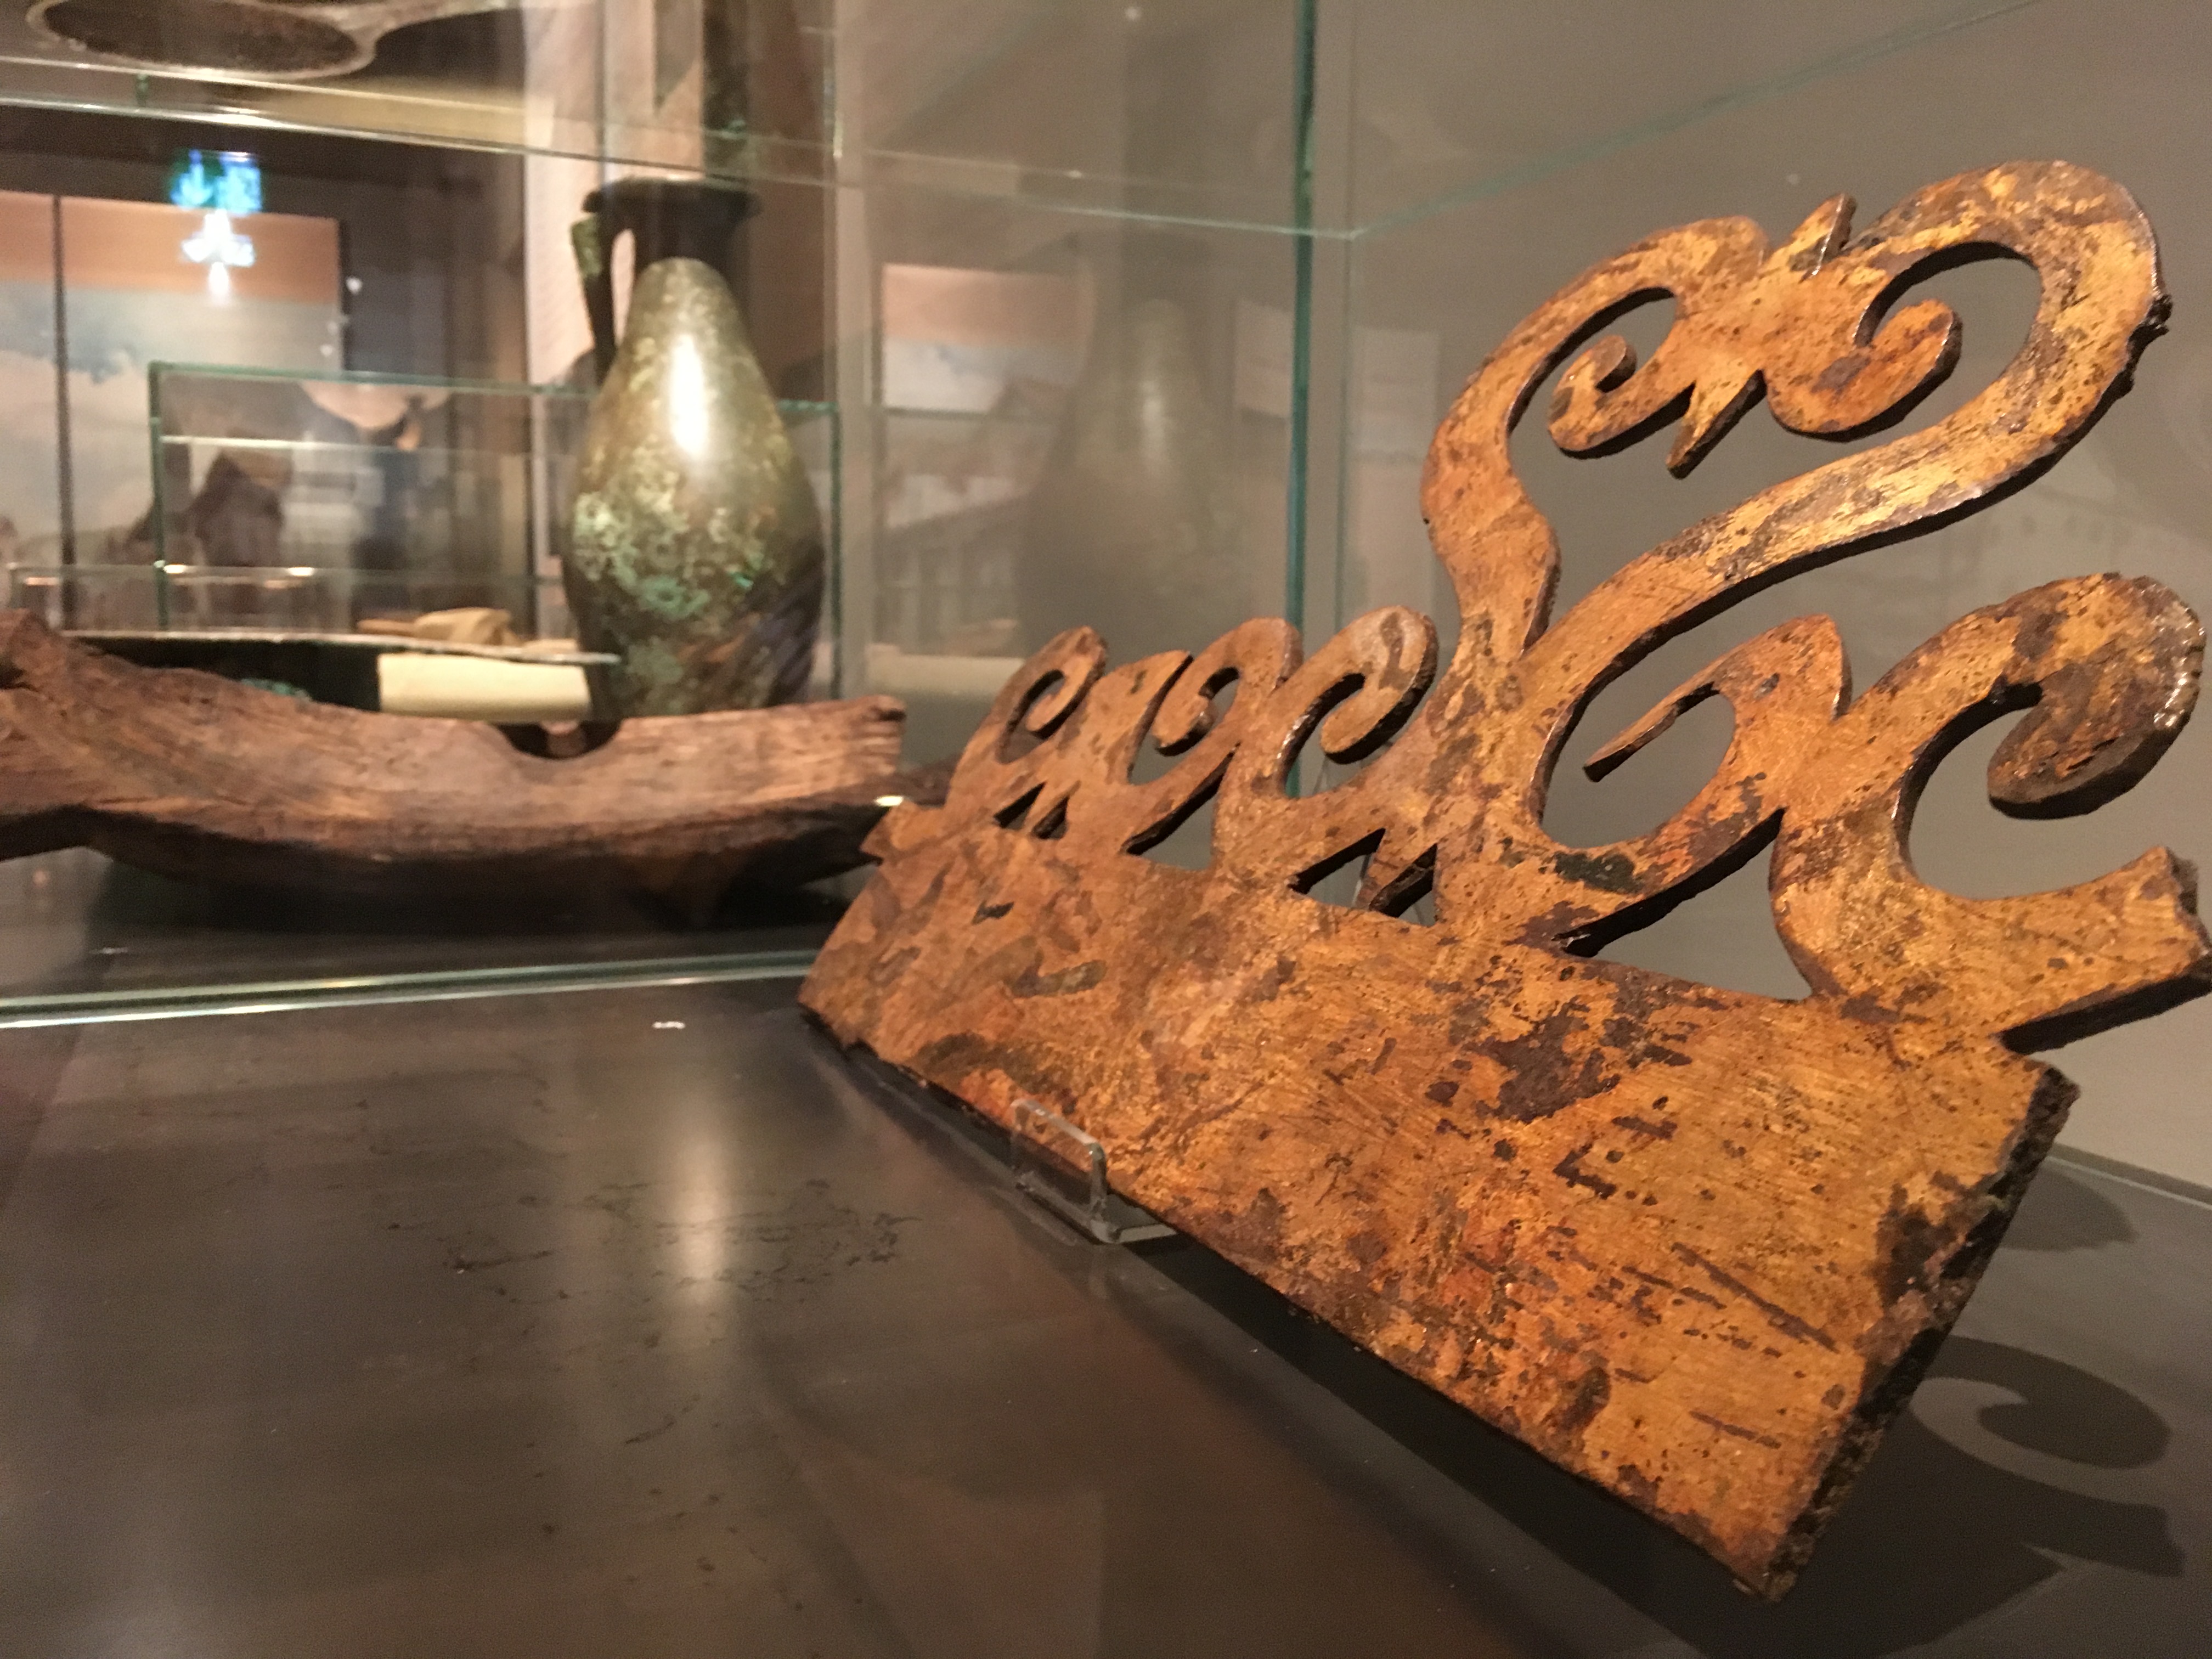 Aus dem Leben der alten Römer: Anhand von zahlreichen Funden veranschaulicht die Ausstellung "Stadt, Land, Fluss" das Leben von vor mehr als 2000 Jahren.